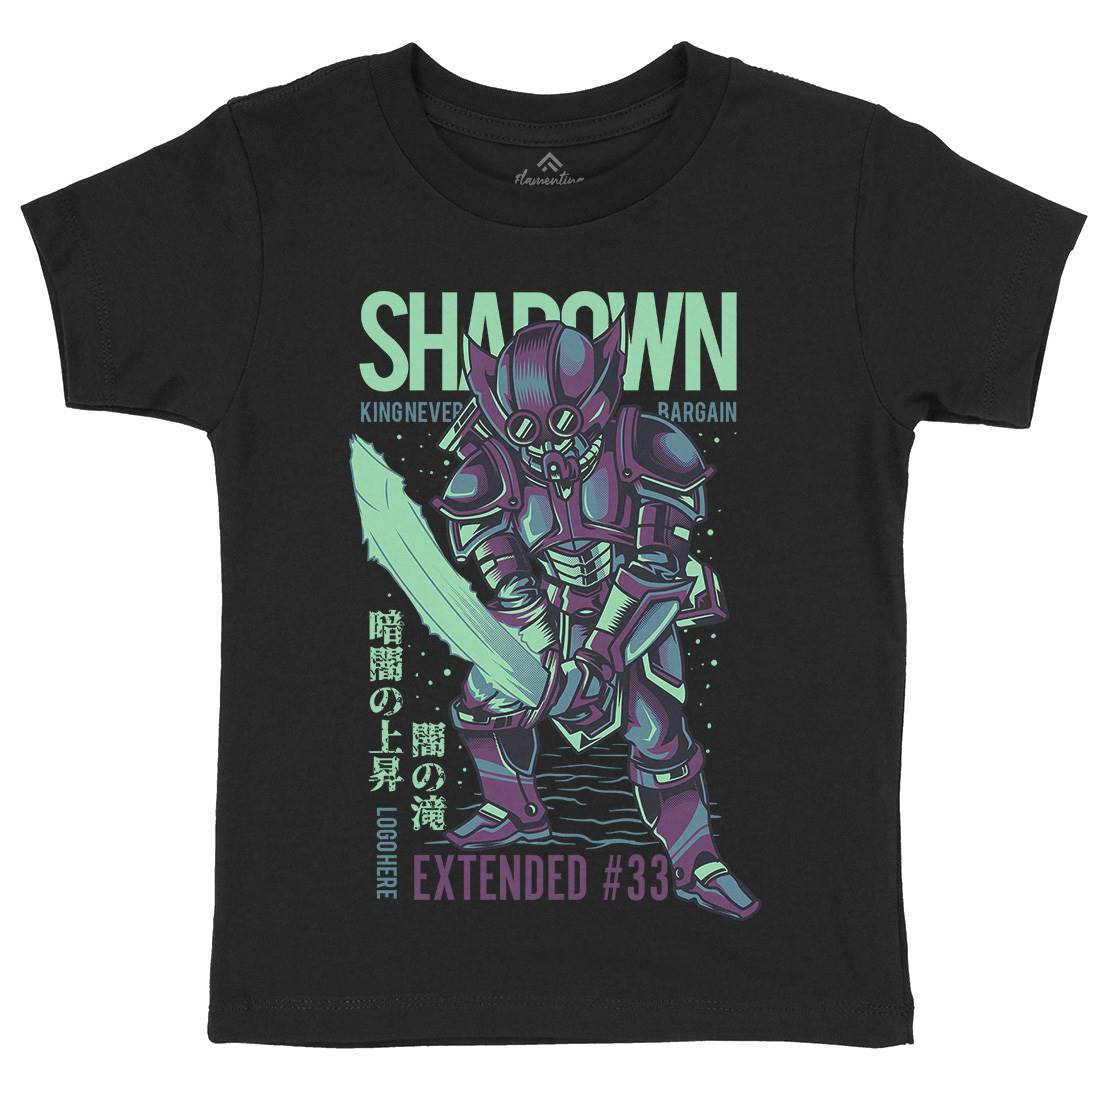 Shadown Knight Kids Crew Neck T-Shirt Warriors D812